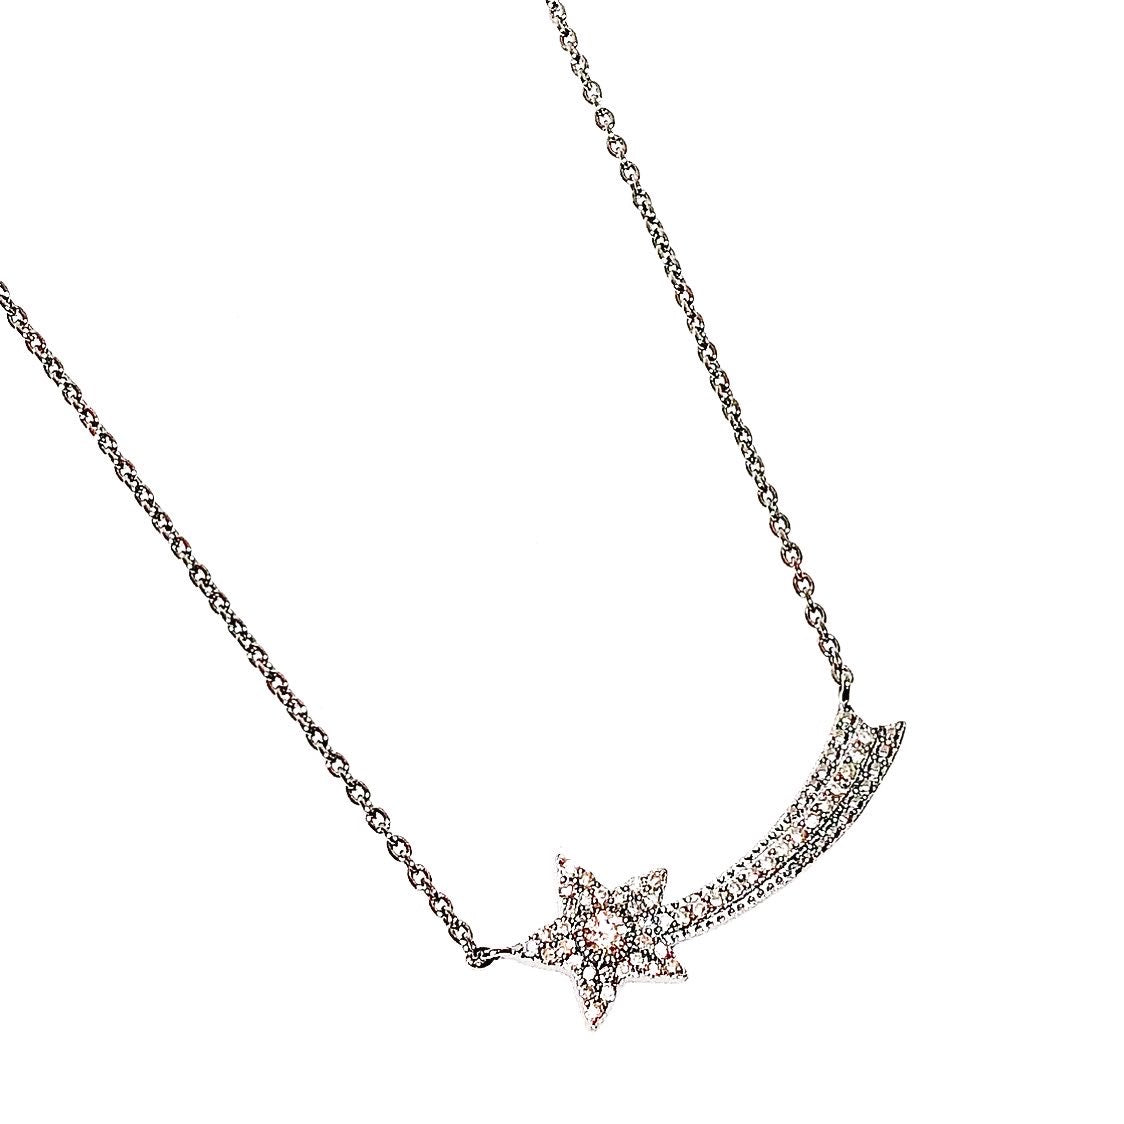 Meteorite Shooting Star Necklace | Meteorite pendant, Meteorite necklace,  Silver stars